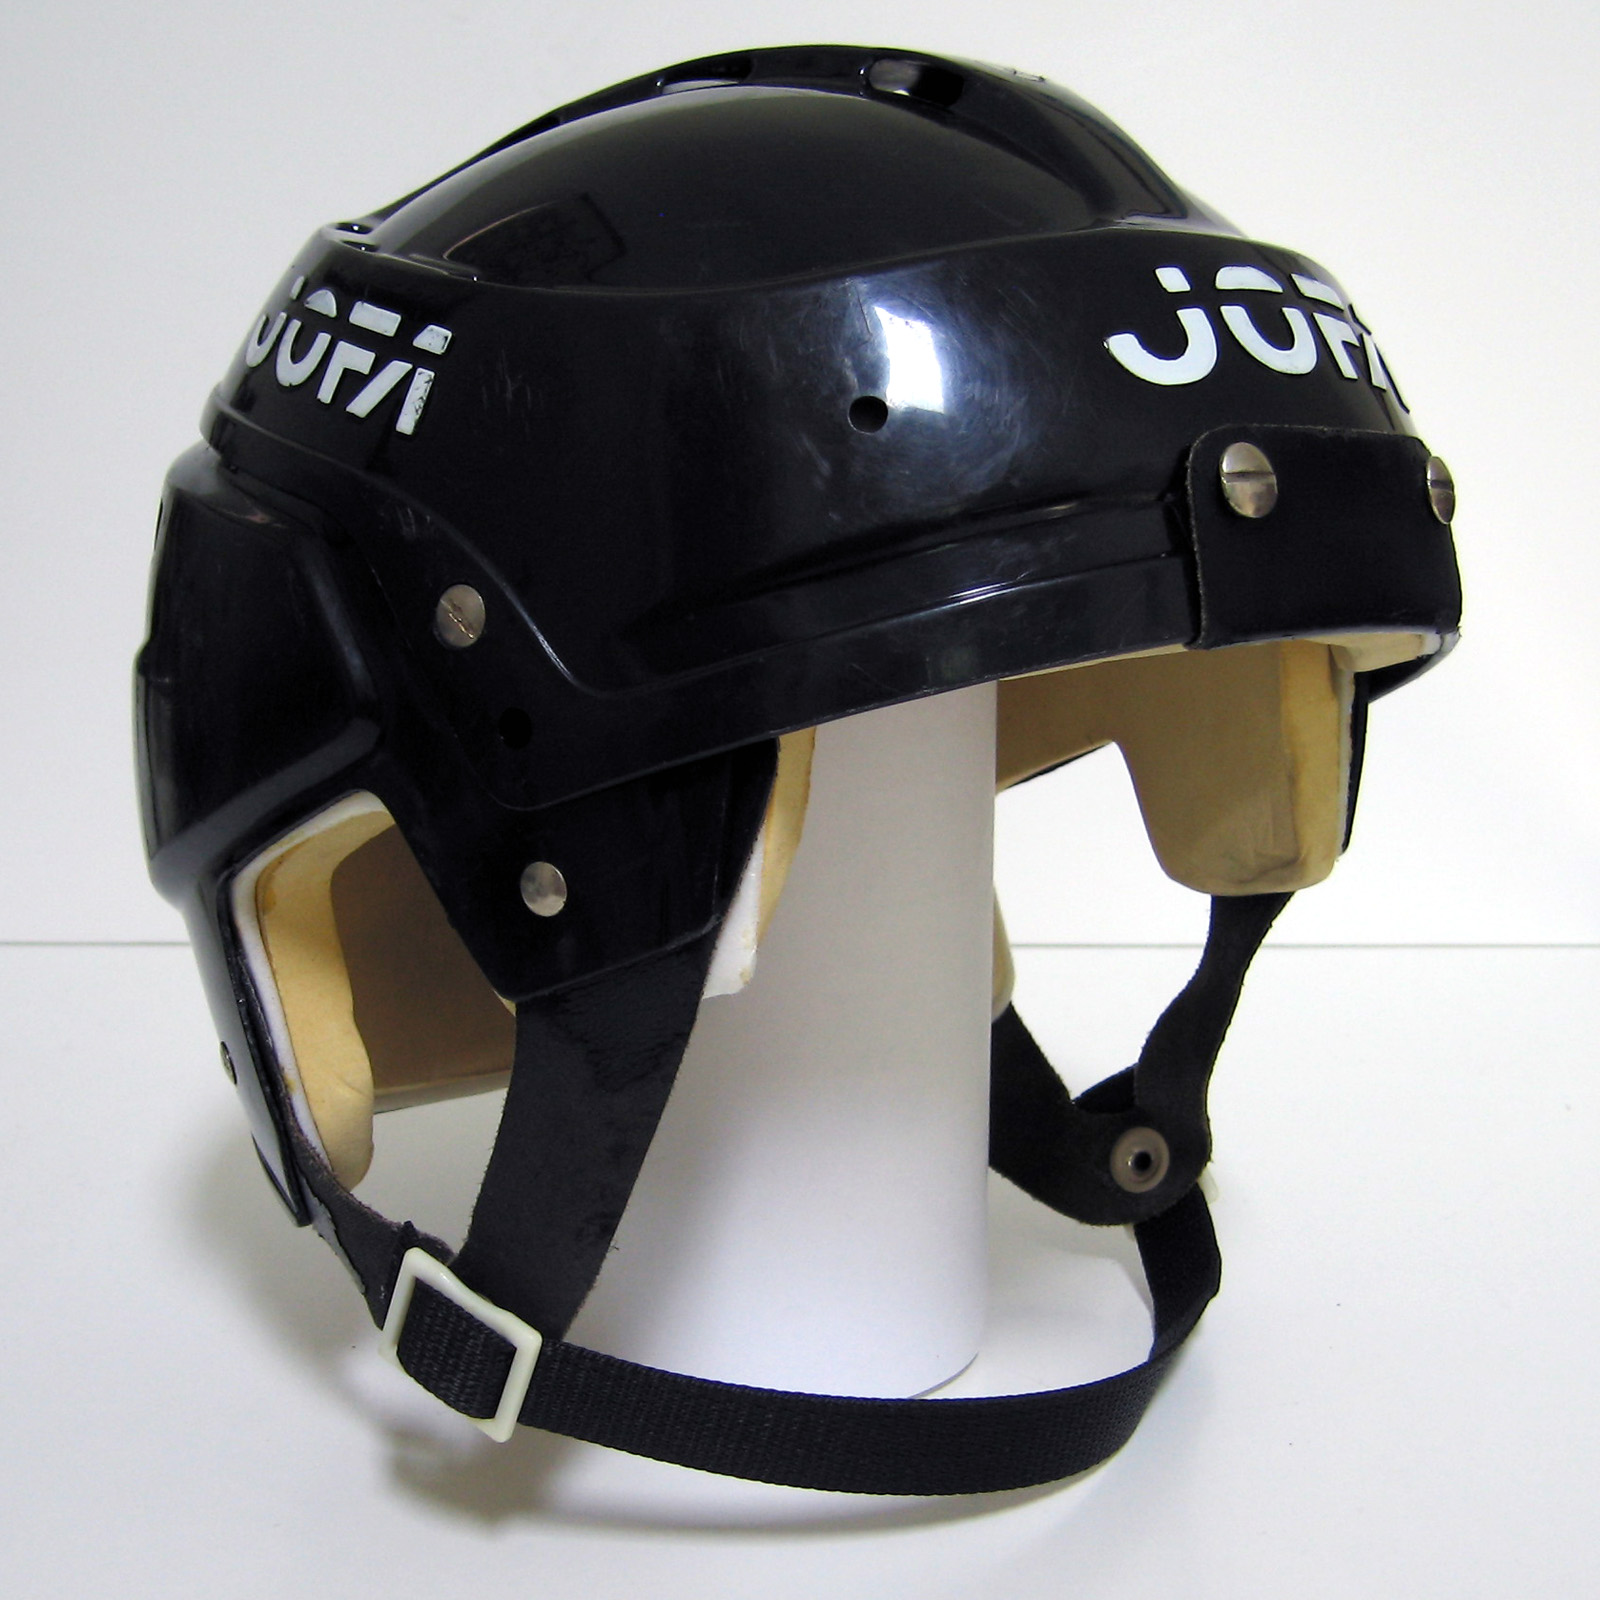 jofa-helmets-halos-of-hockey-the-jofa-366-prototype